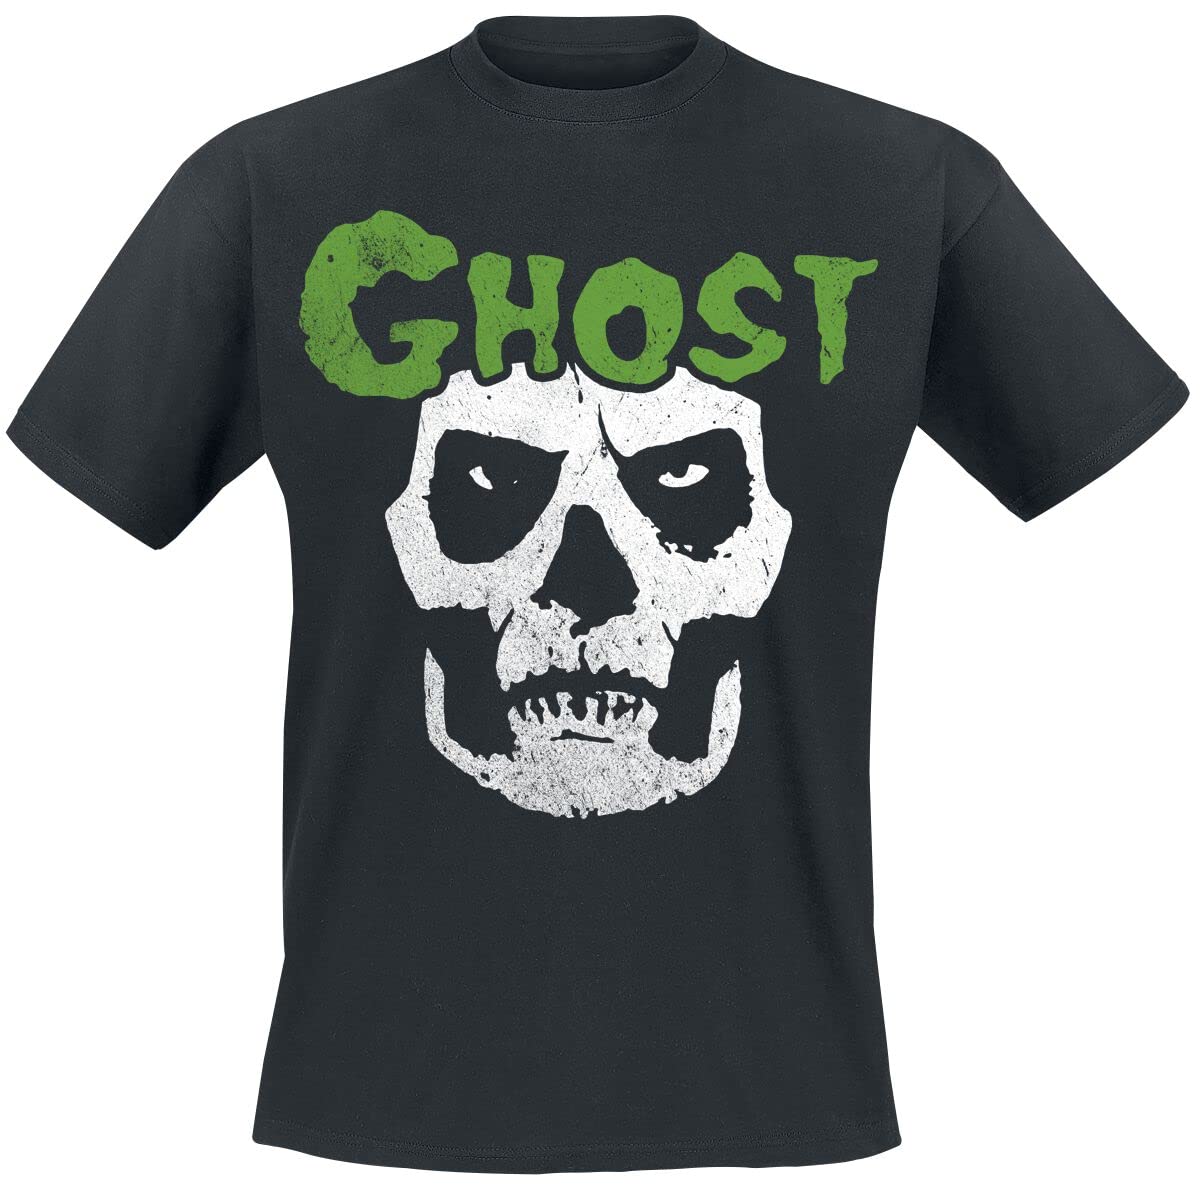 Ghost Fog - YK Männer T-Shirt schwarz S 100% Baumwolle Band-Merch, Bands, Nachhaltigkeit